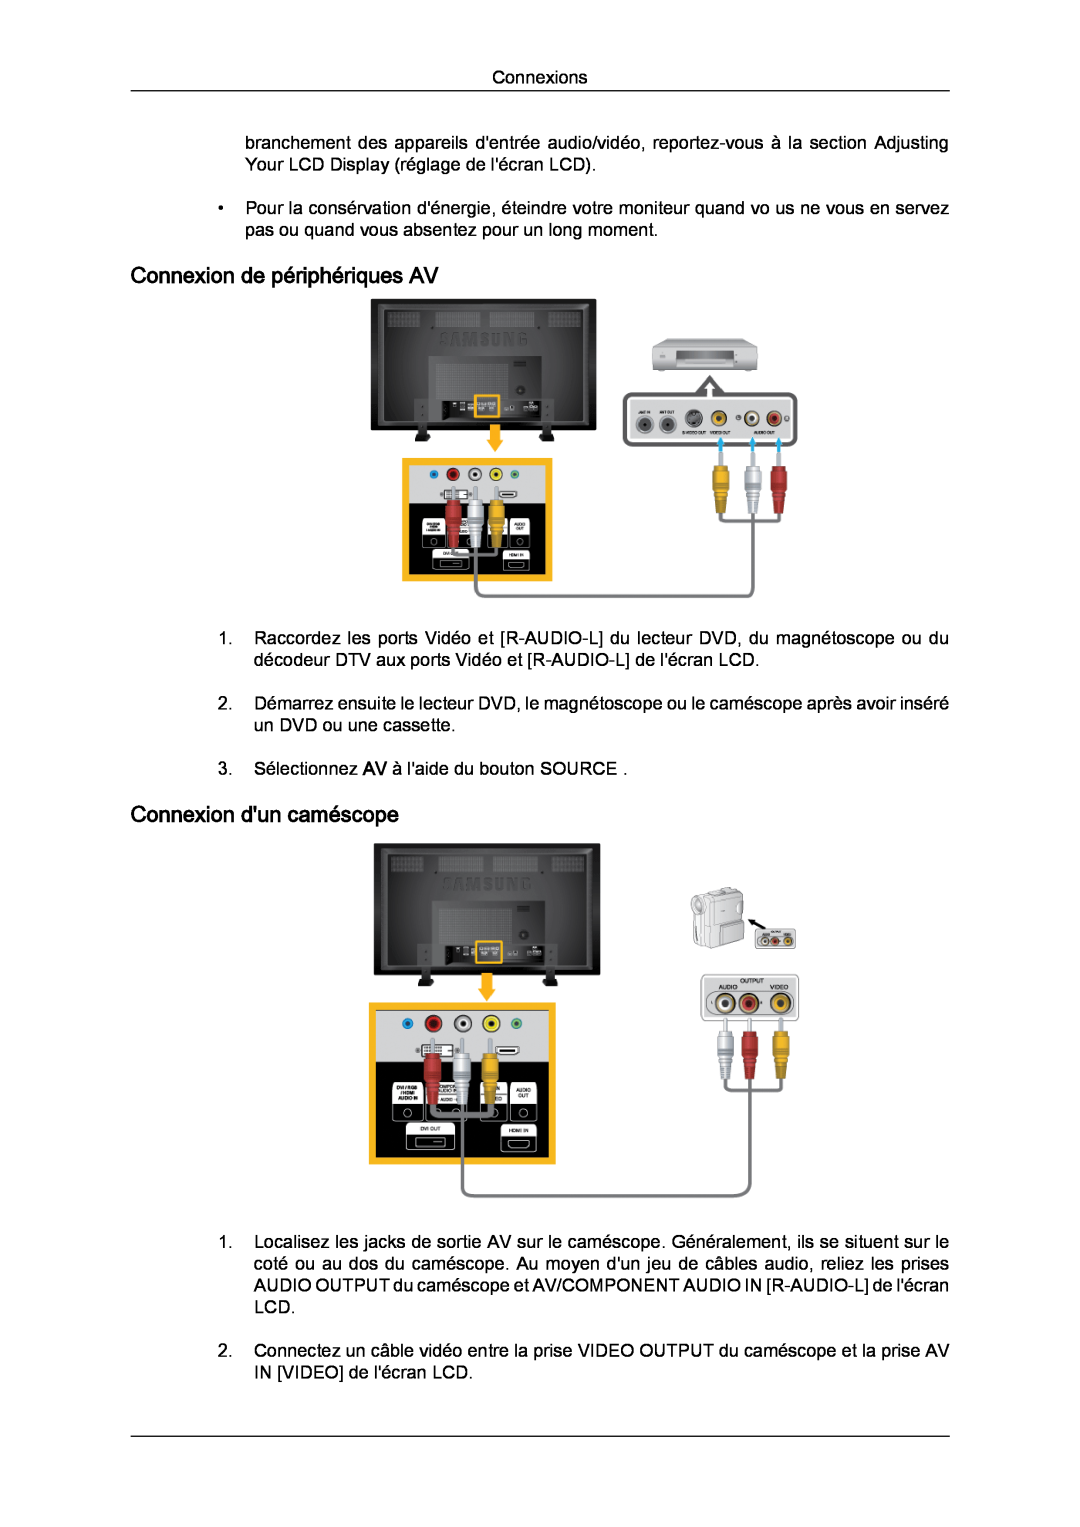 Samsung LH82TCUMBG/EN, LH70TCUMBG/EN, LH70TCSMBG/EN manual Connexion de périphériques AV, Connexion dun caméscope 